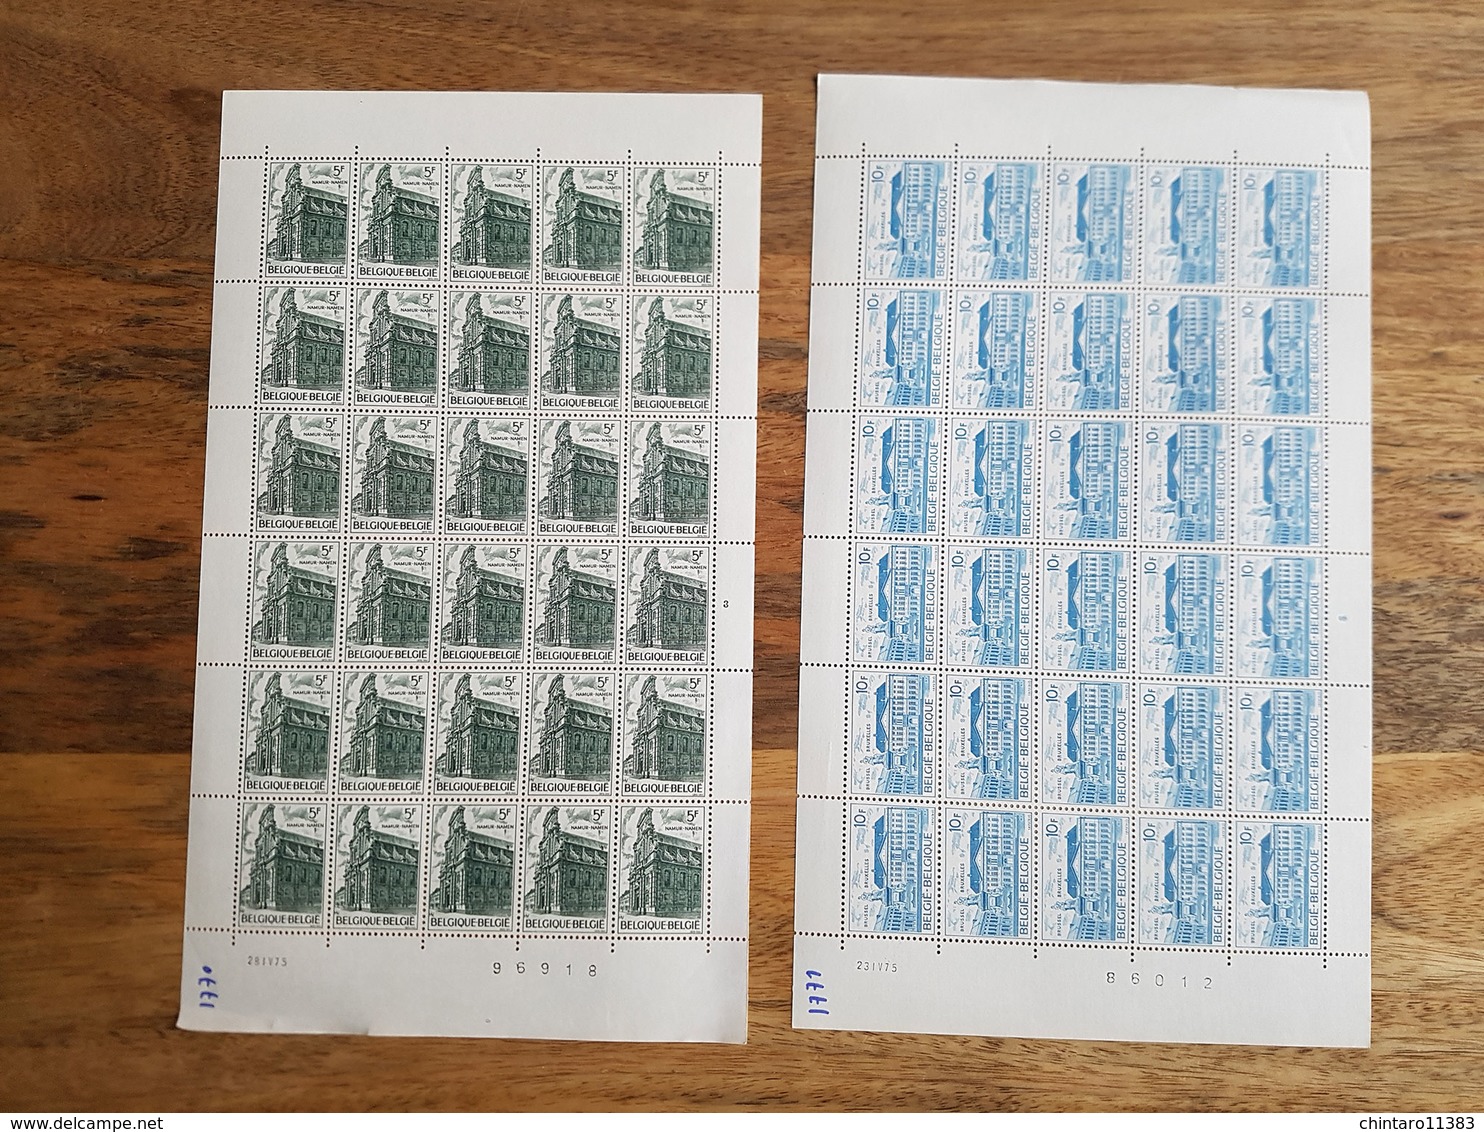 Lot feuilles complètes de timbres Belgique - Année 1975